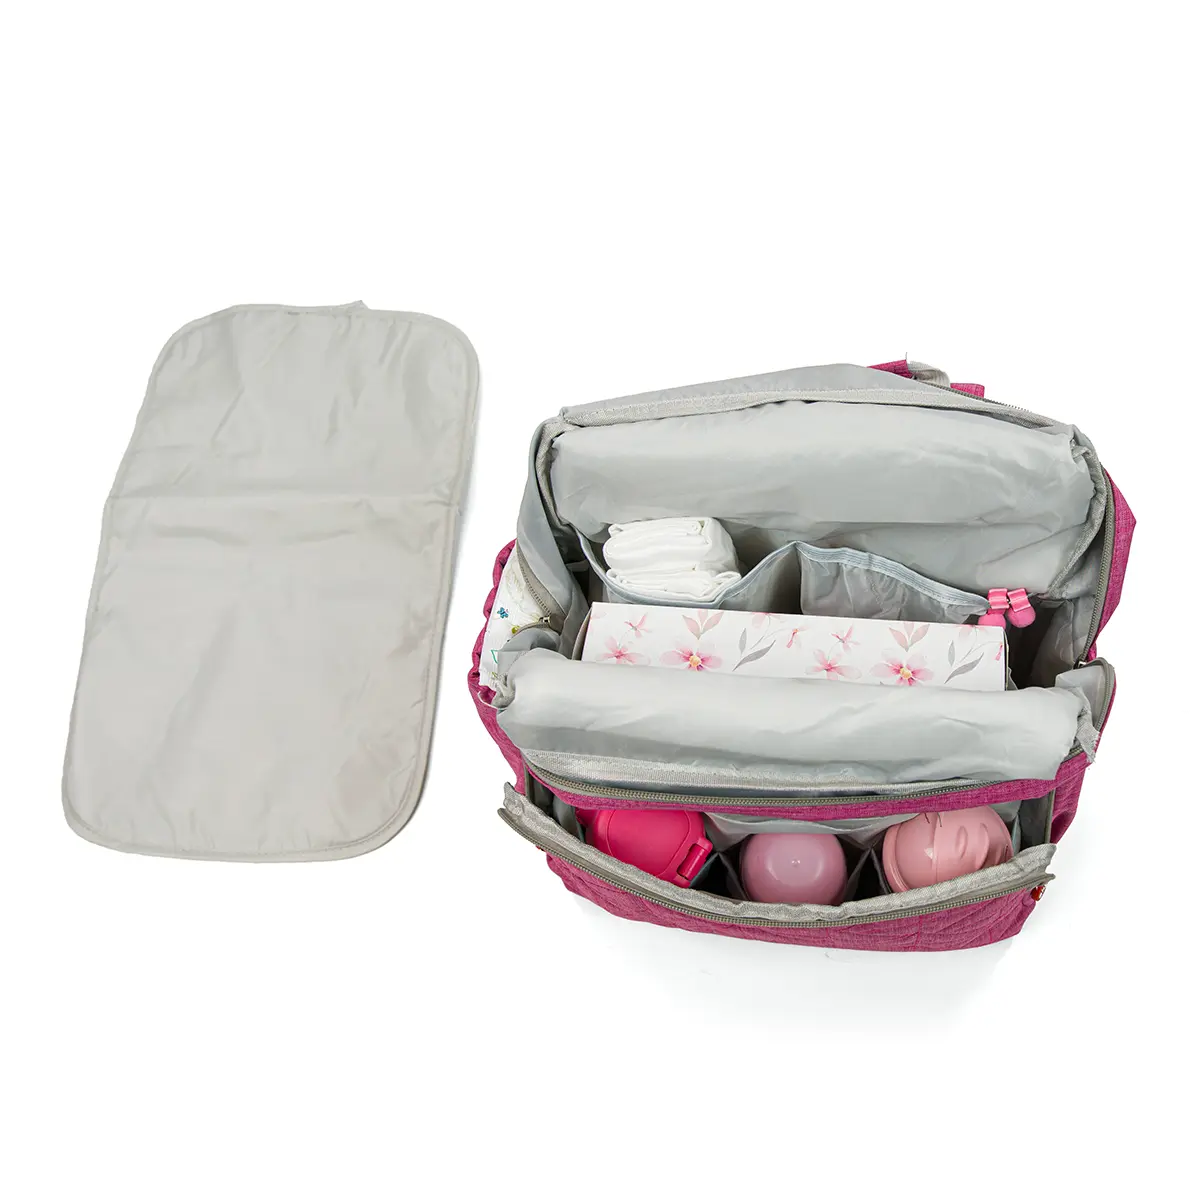 Pelenkázó hátizsák, hátitáska rózsaszín színben (ST-MB-608-PINK) pelenkázótáska